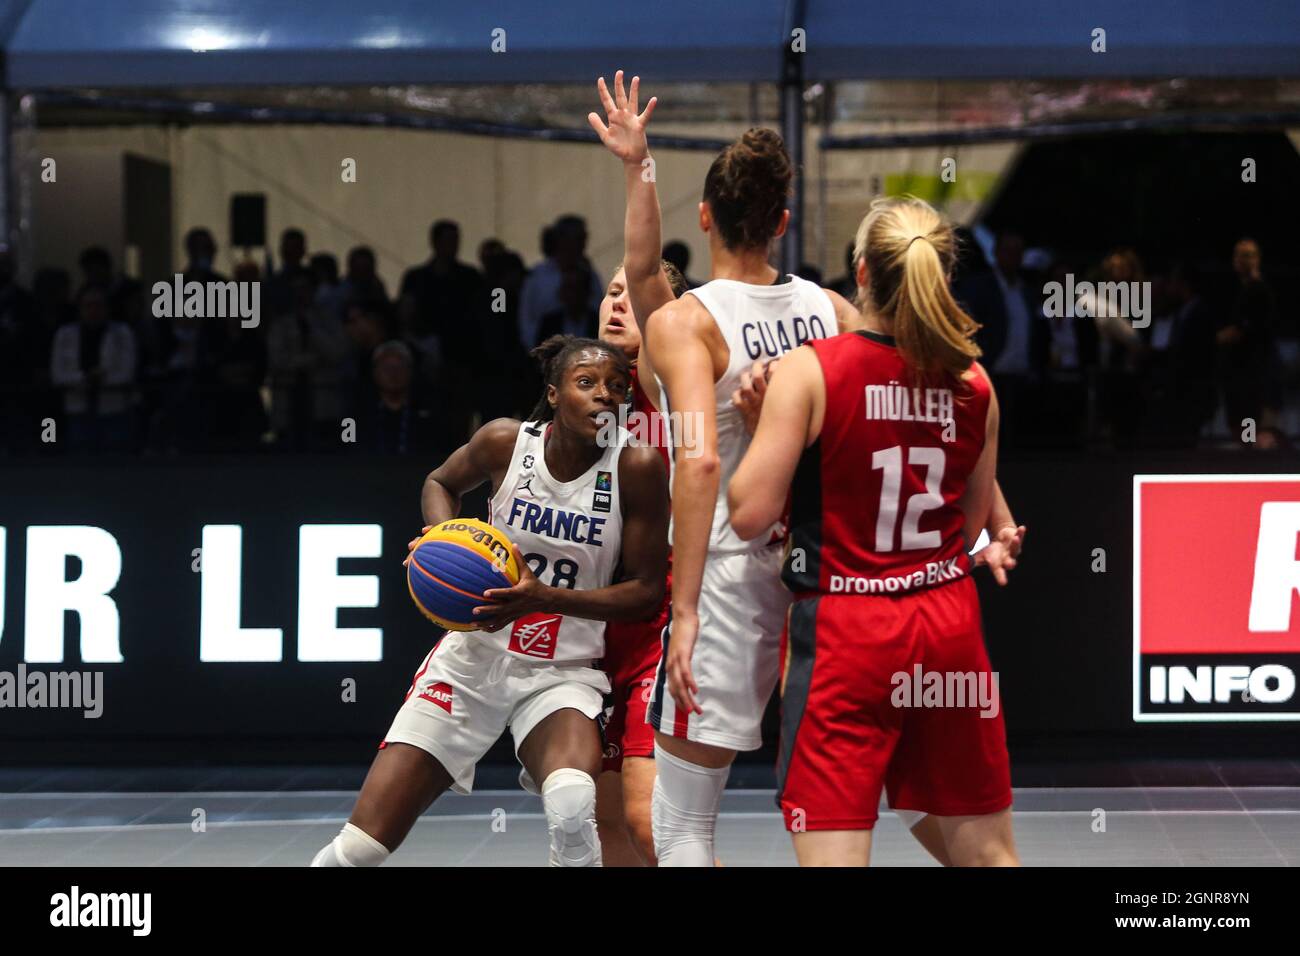 Migna Touré (Francia), Laetitia Guapo (Francia), Katharina Müller (Alemania) y Luana Rodefeld (Alemania) en acción durante el primer día en la FIBA 3x3 Europe Cup 2021 en París. (Foto de Elena Vizzoca/Pacific Press/Sipa USA) Foto de stock